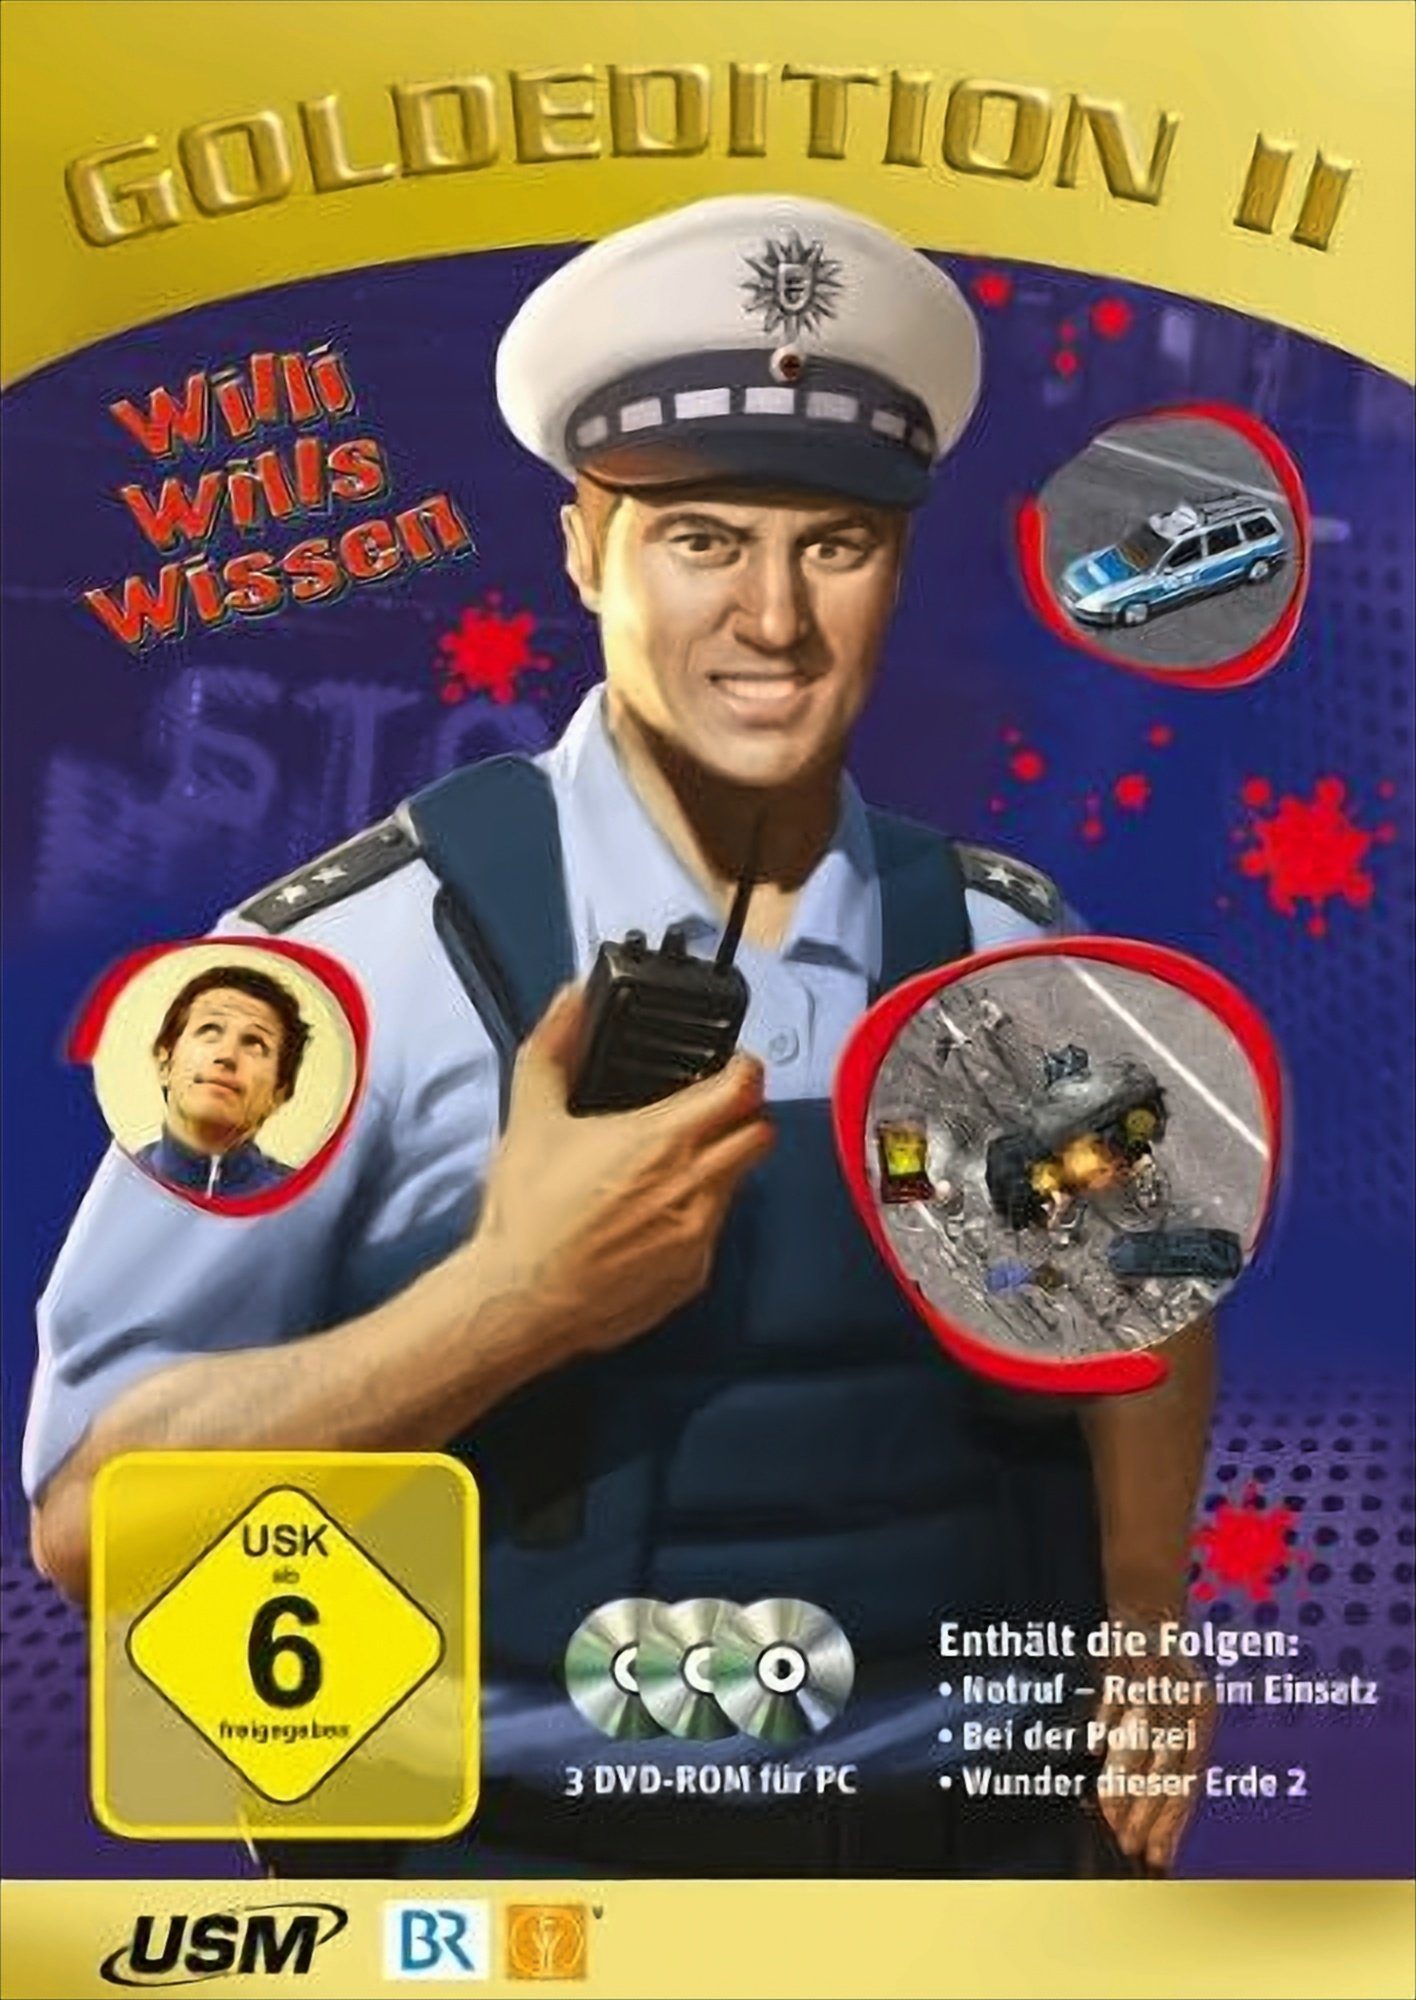 Willi wills wissen - Goldedition 2 (3 DVD-ROMs) PC